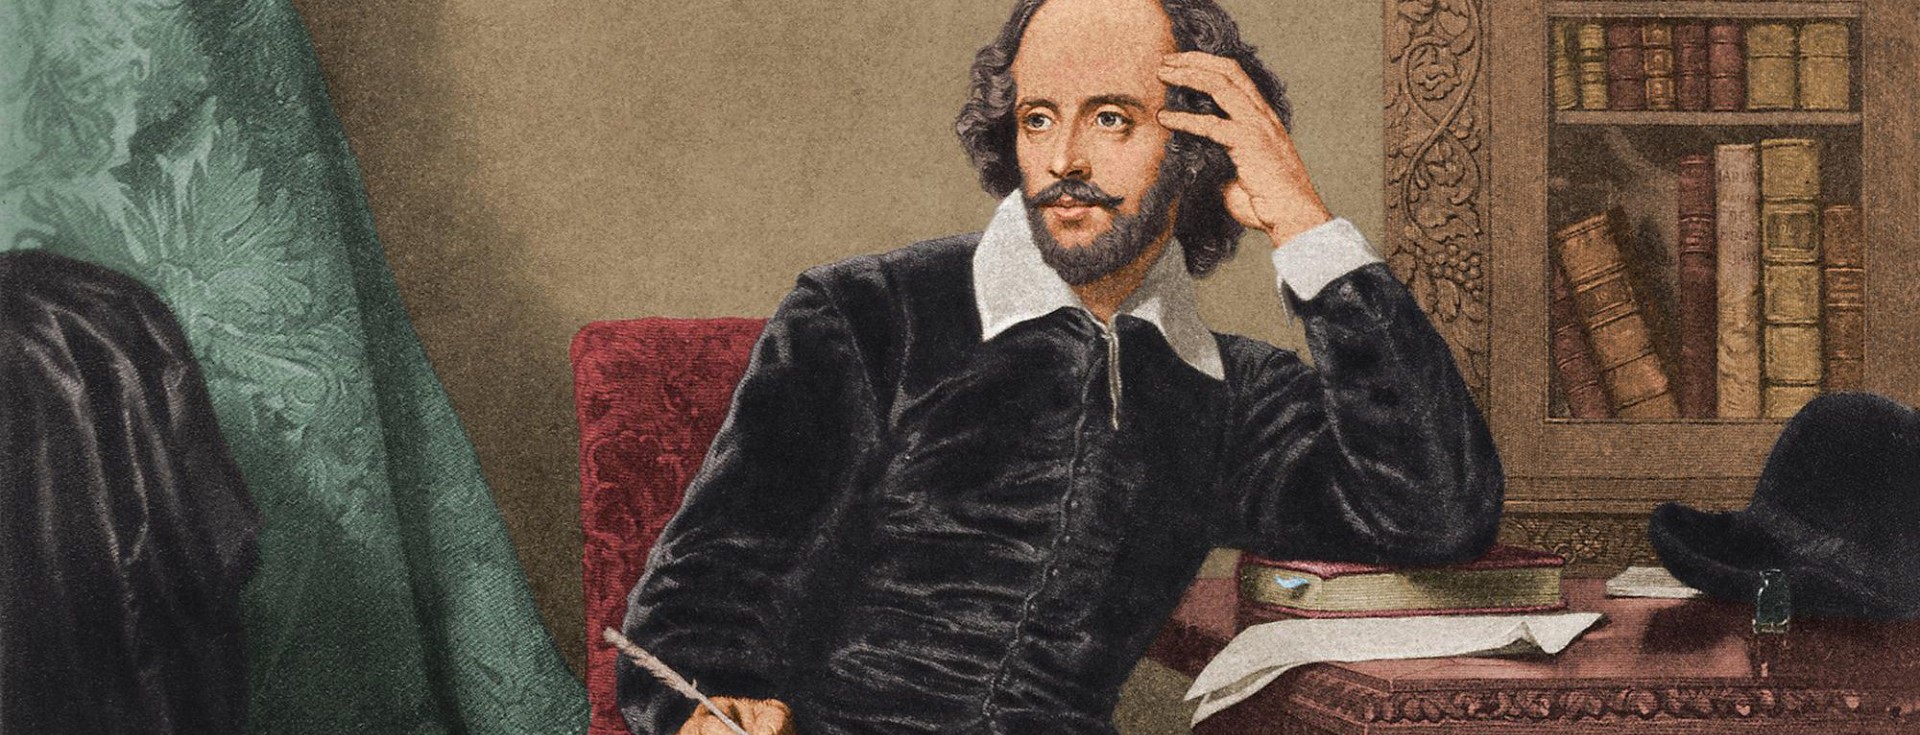 Yapay Zekadan Dikkat Çekici William Shakespeare Analizi